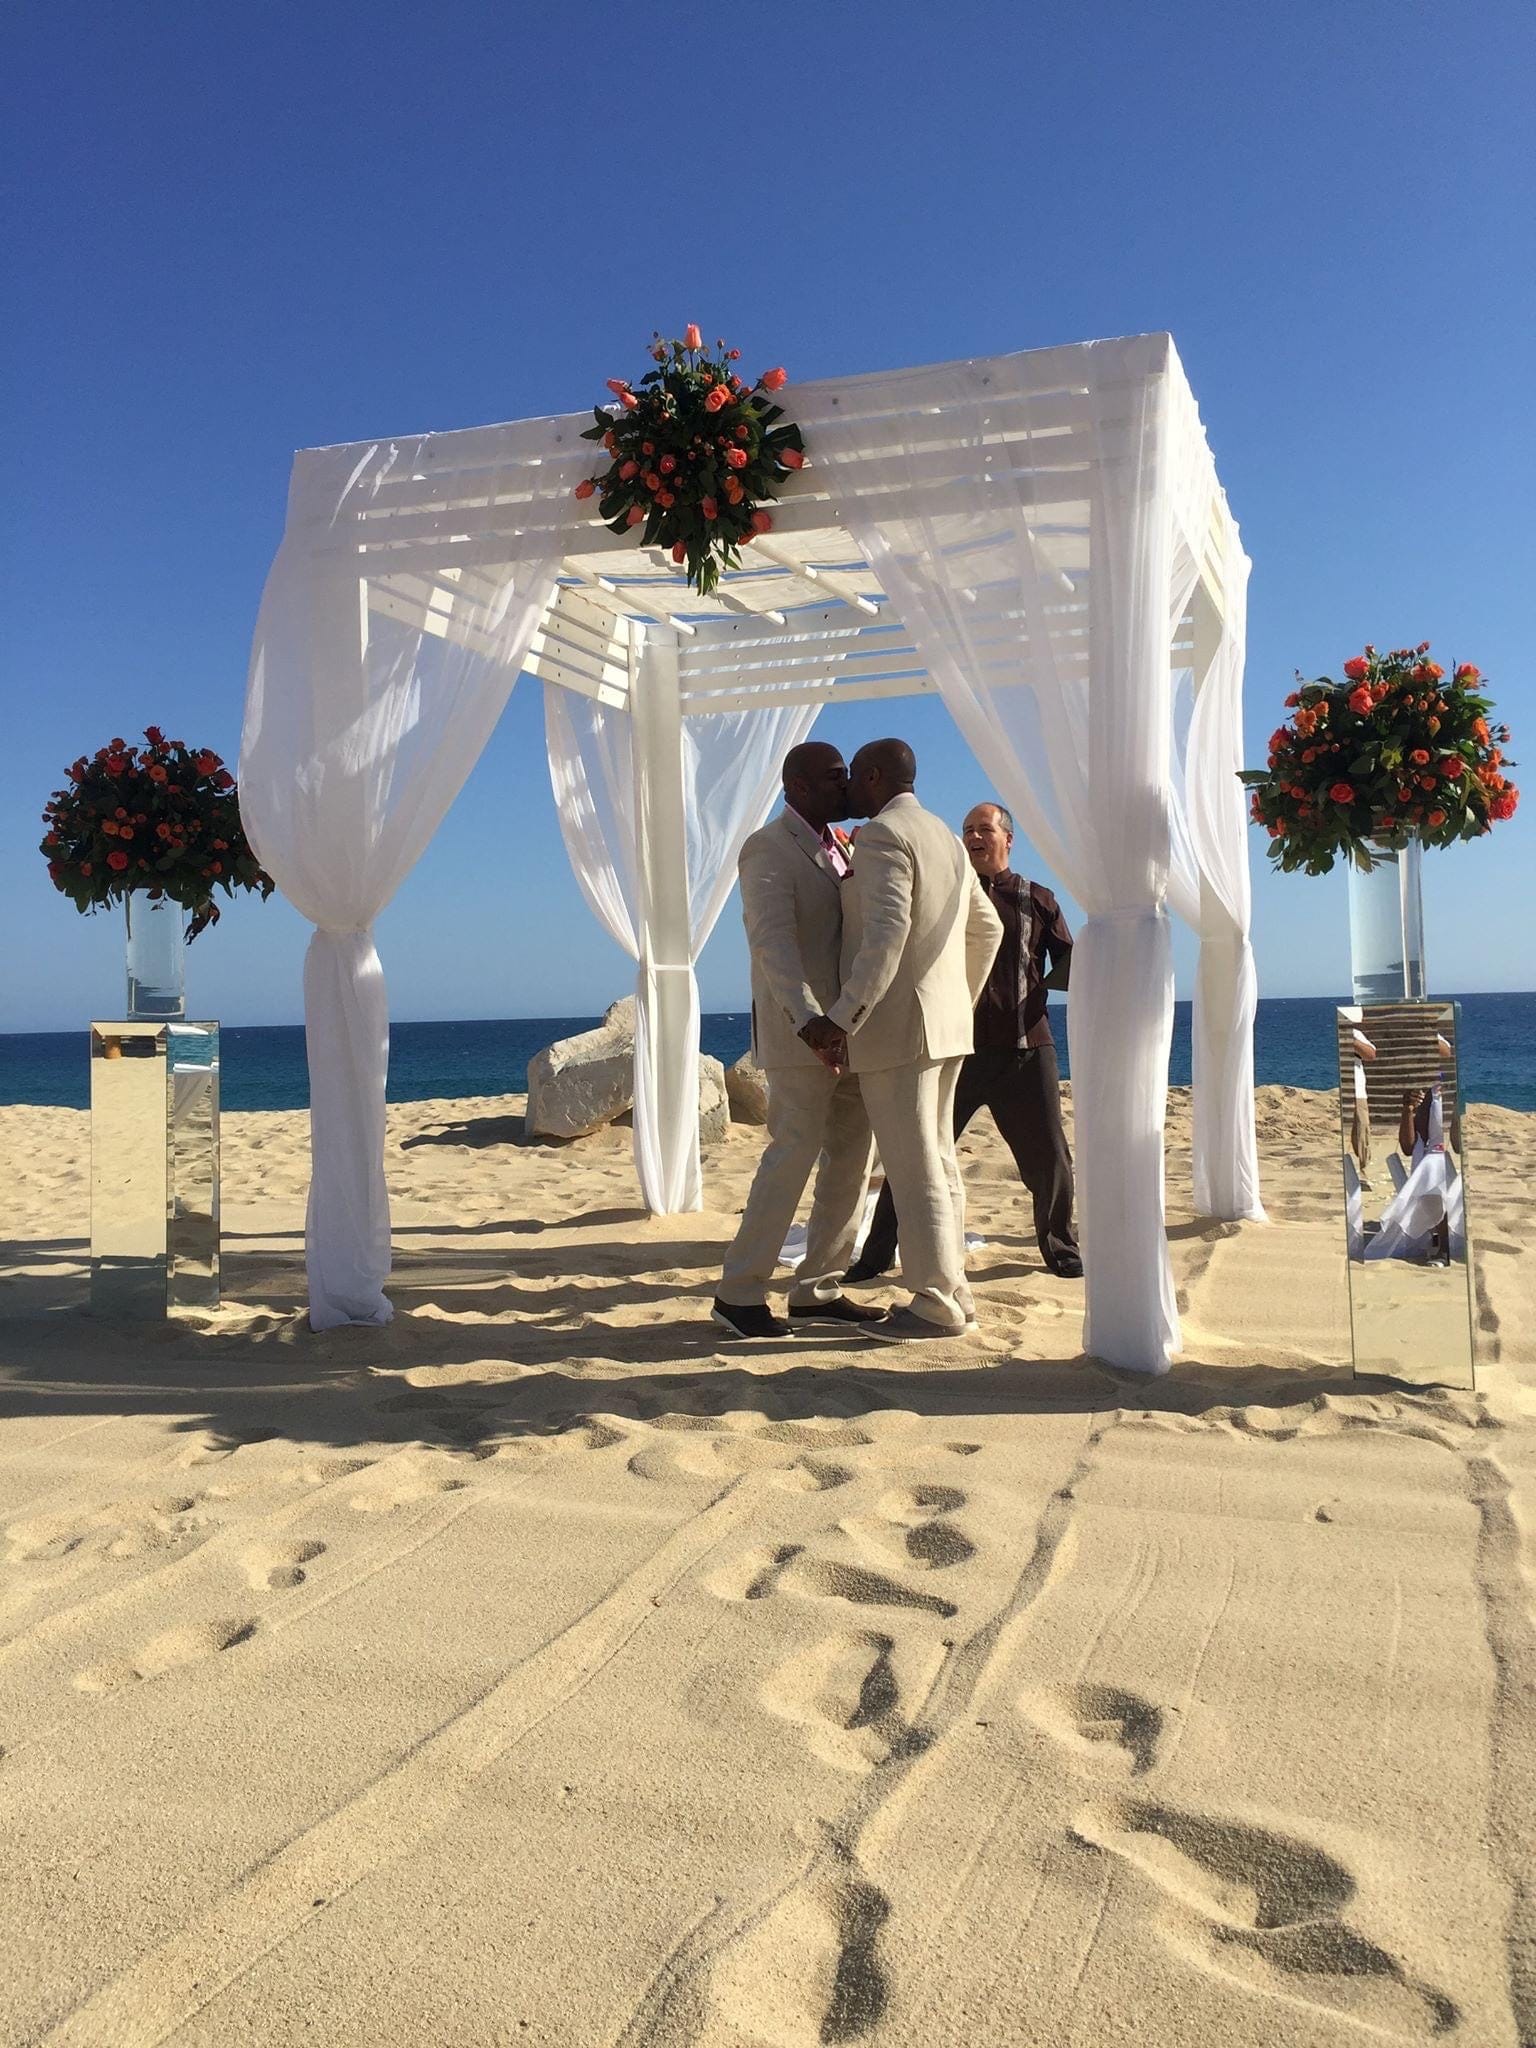 Paar küsst sich unter einer Pergola am Strand und heiratet